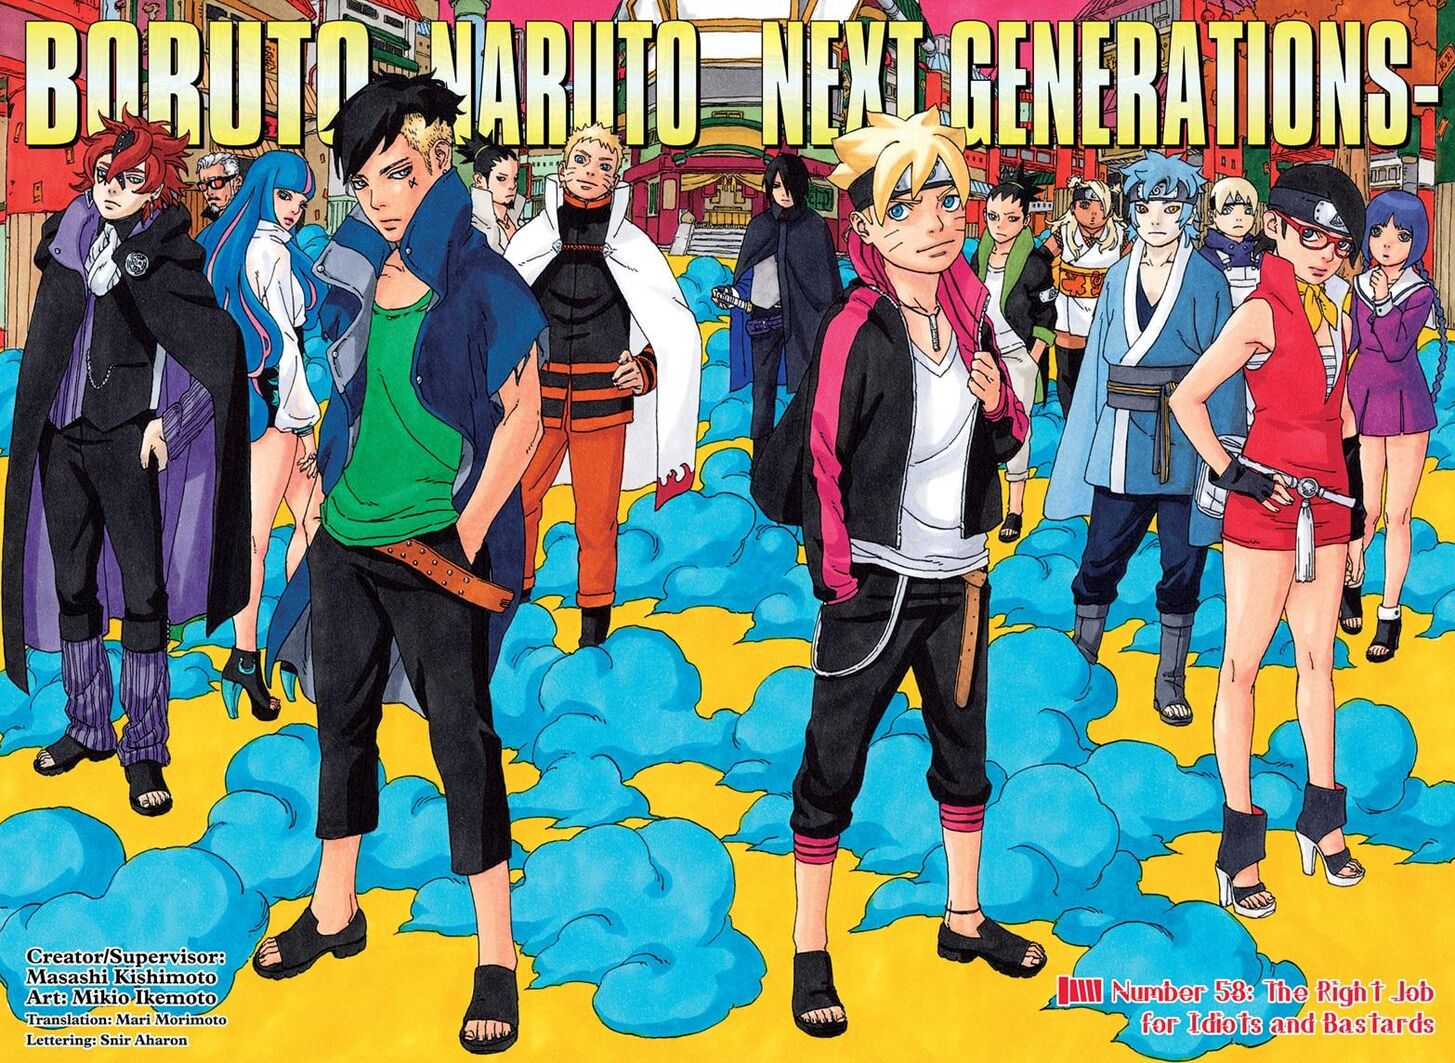 Boruto: Naruto Next Generations (episodes 1–52) - Wikipedia